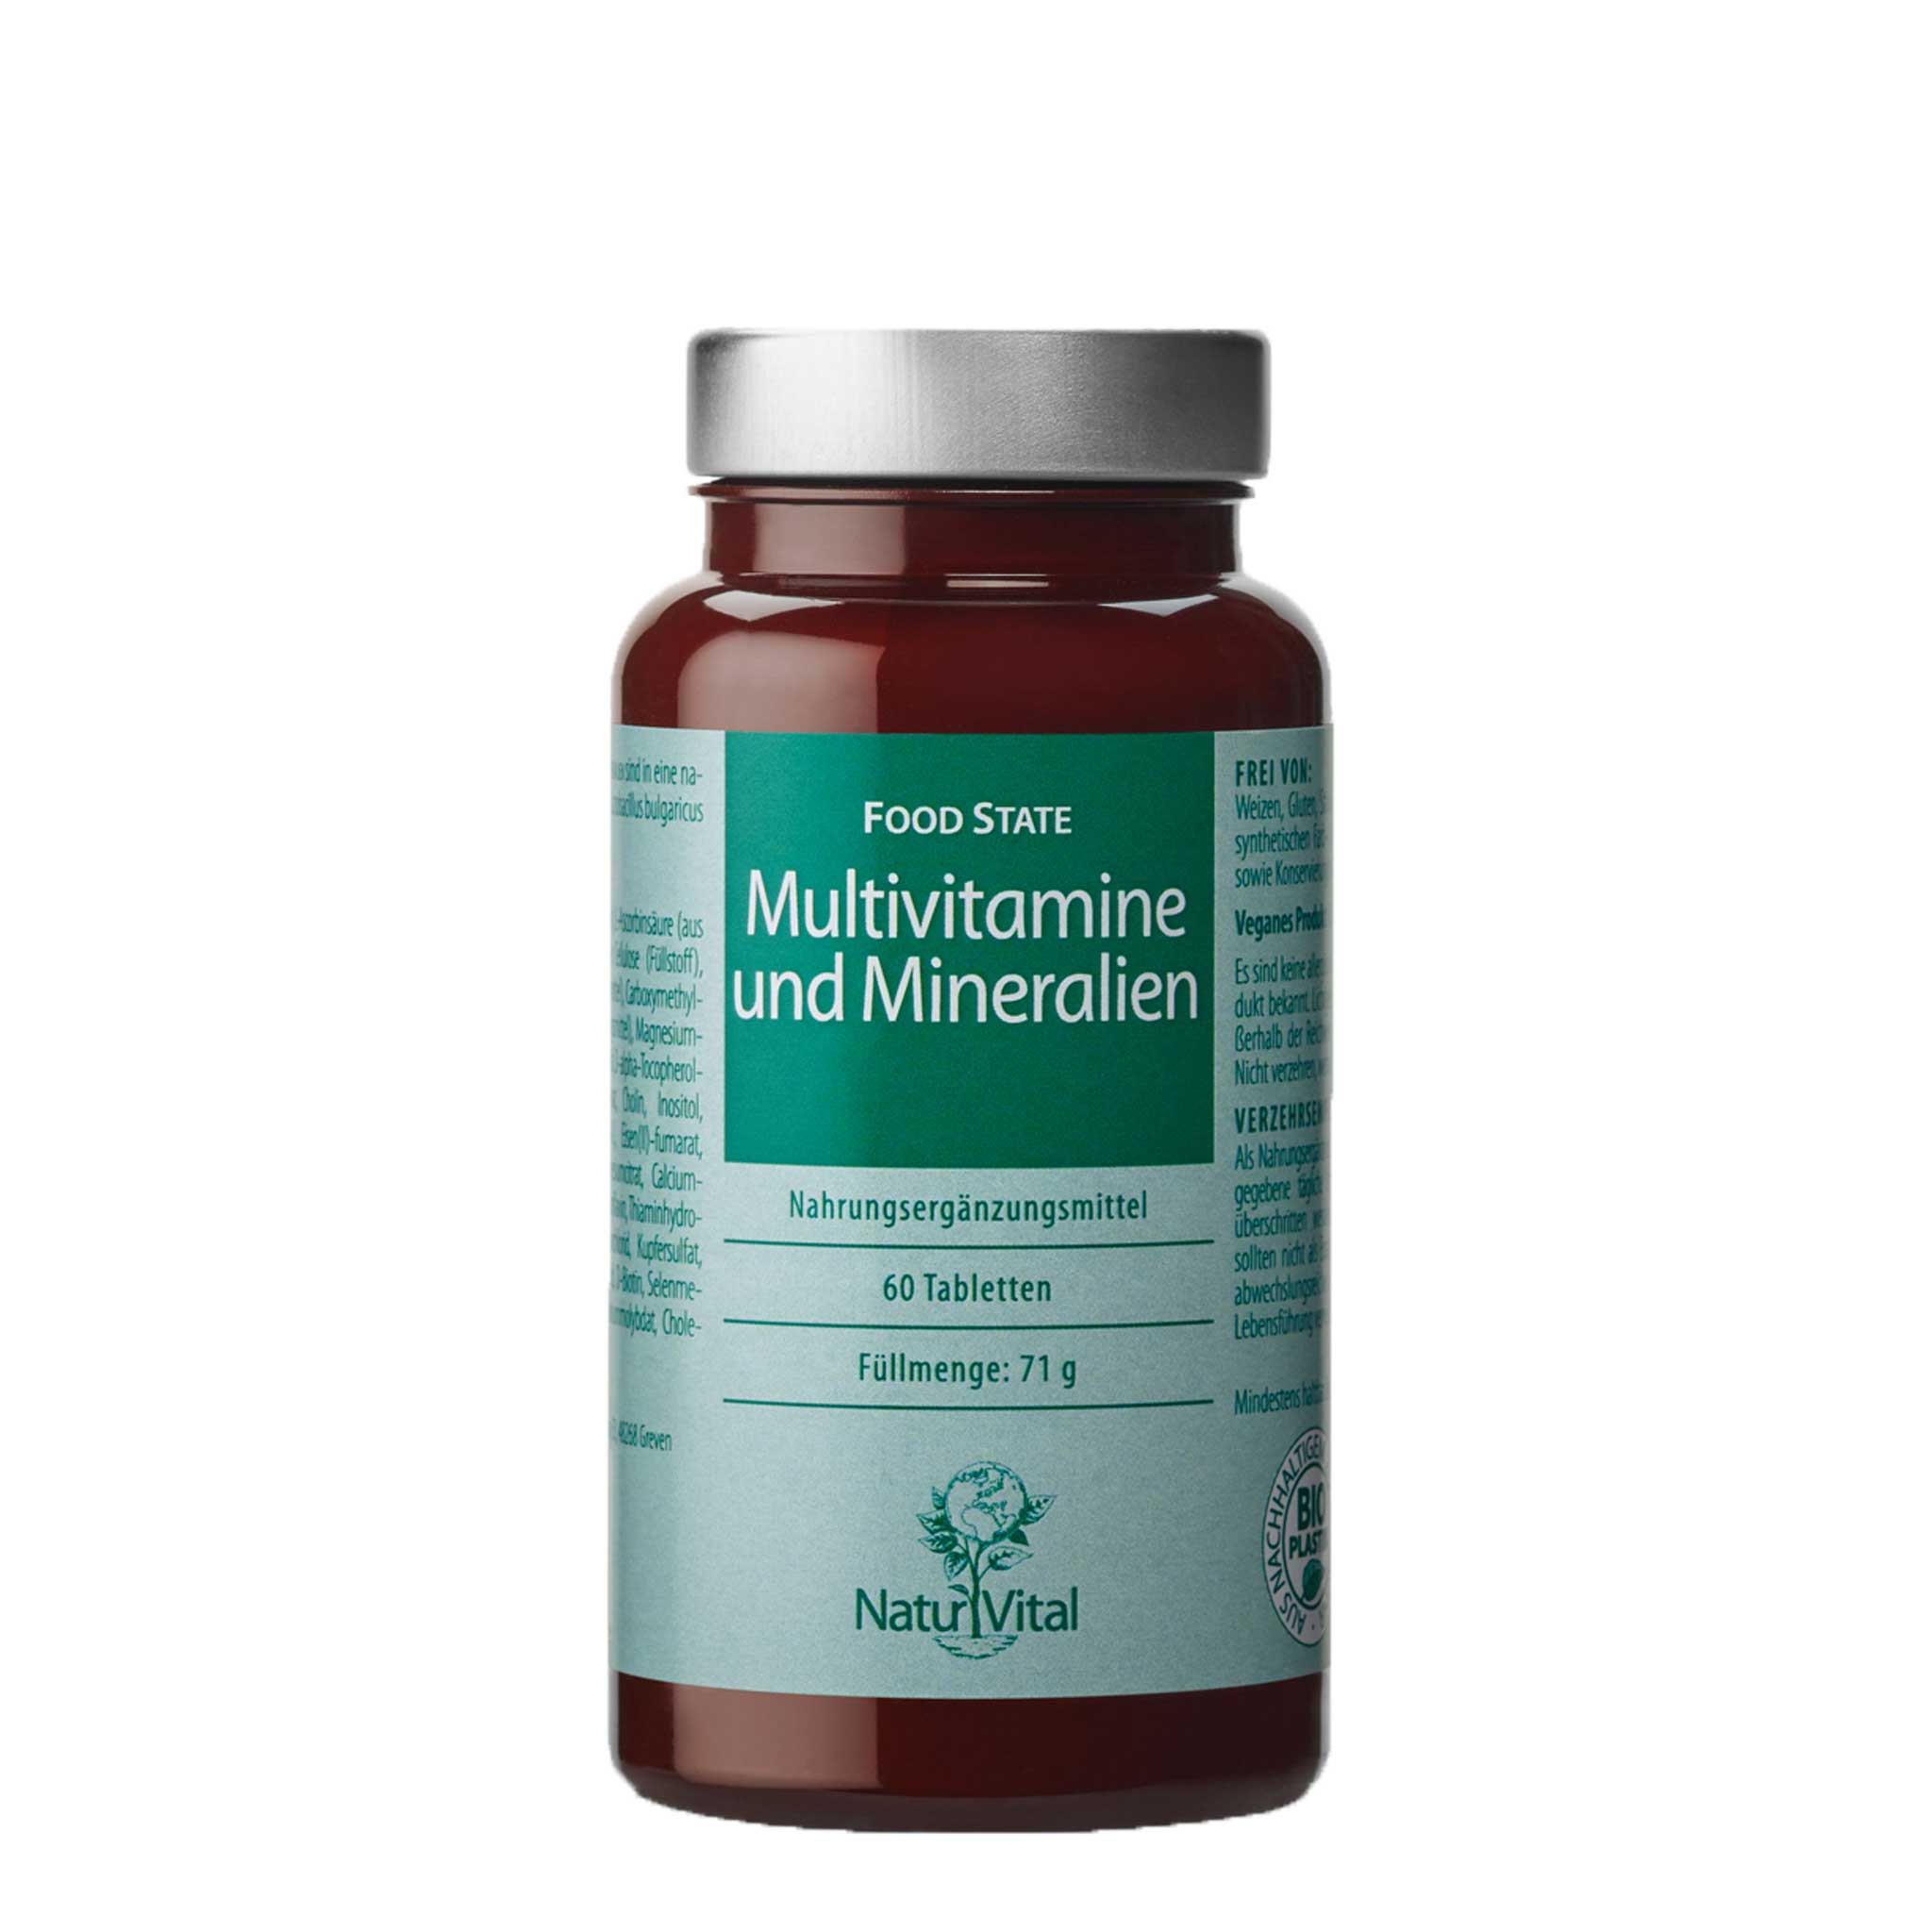 Multivitamine und Mineralien von Natur Vital beinhaltet 60 Tabletten